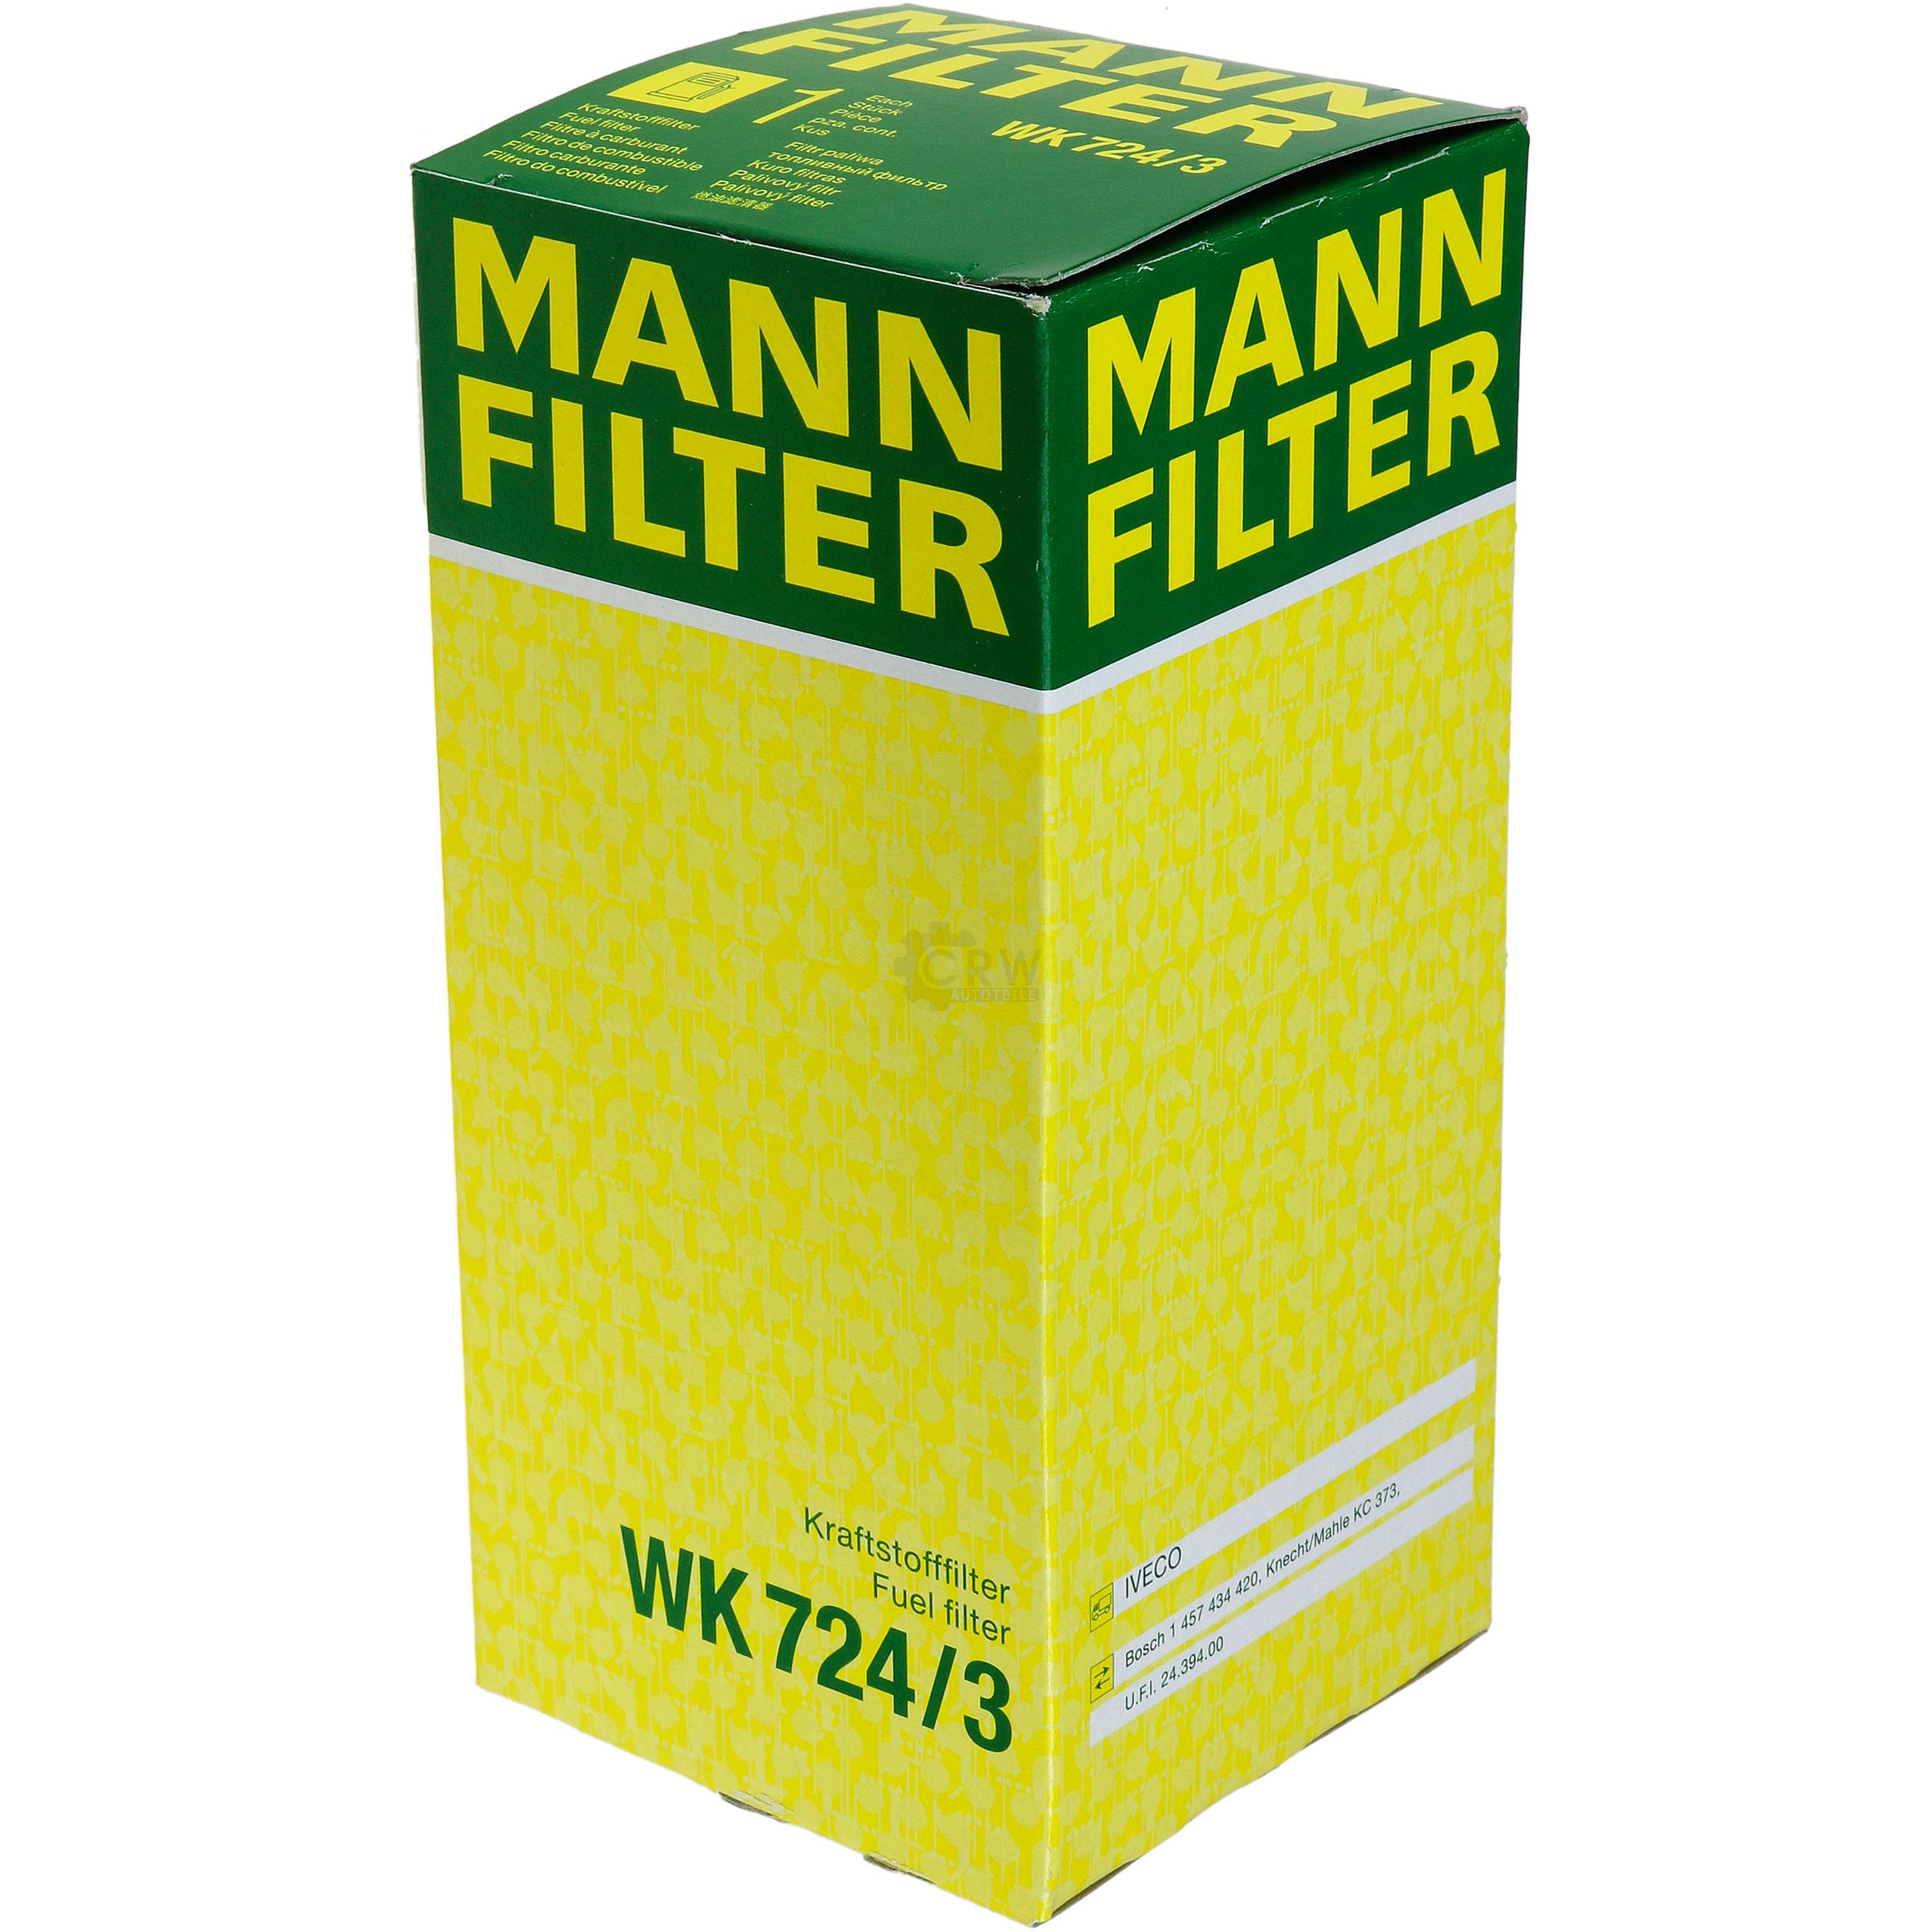 MANN-FILTER Kraftstofffilter WK 724/3 Fuel Filter